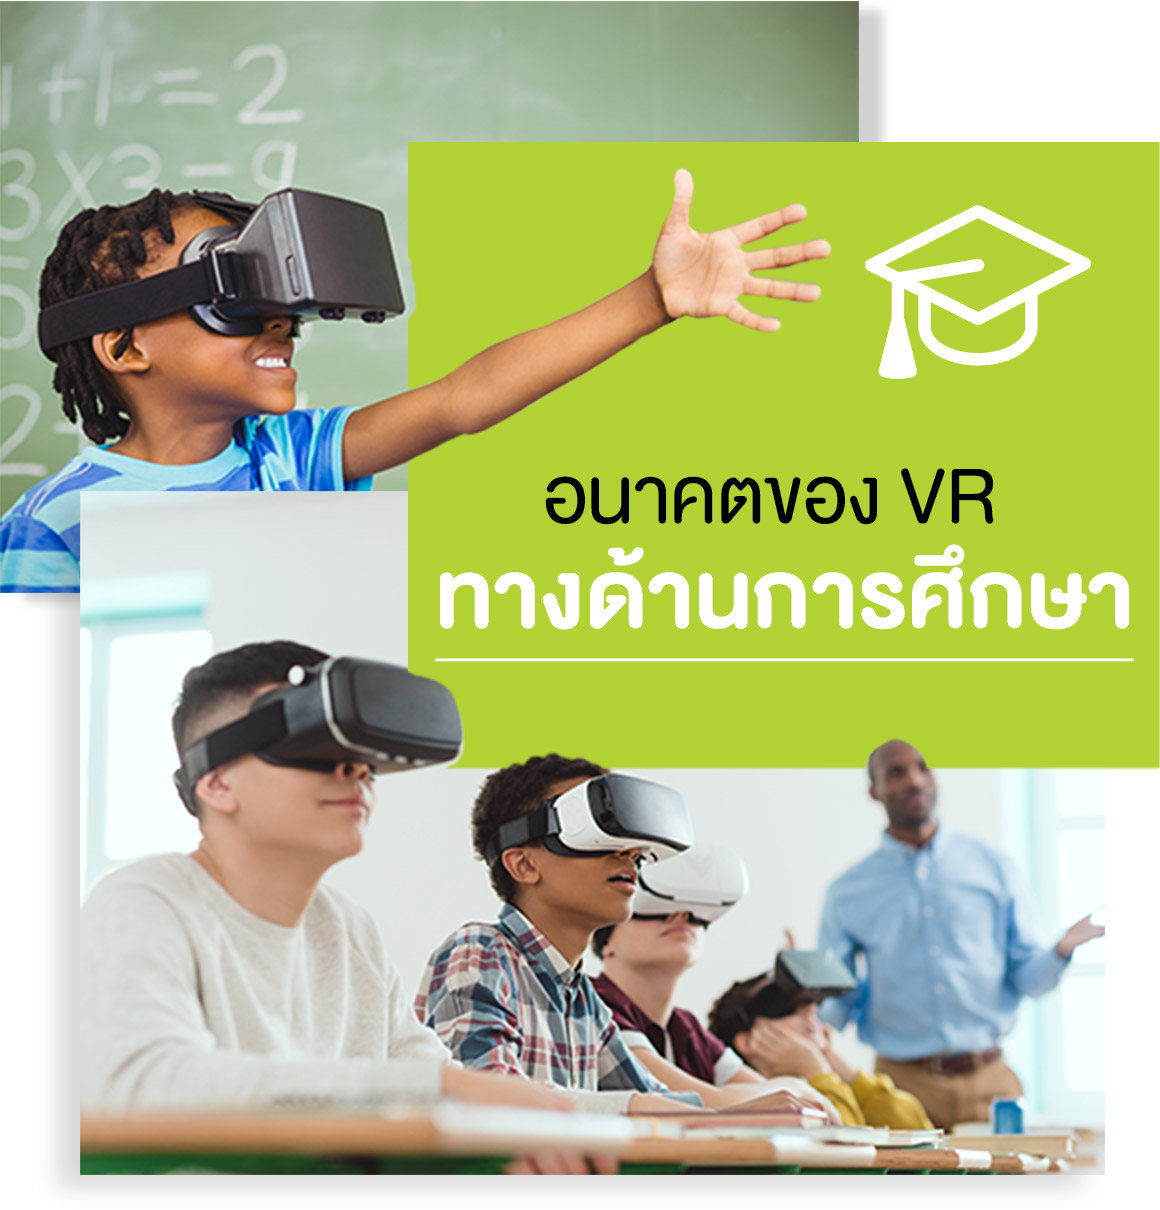 อนาคต VR ทางด้านการศึกษา- Startup Thailand Focus